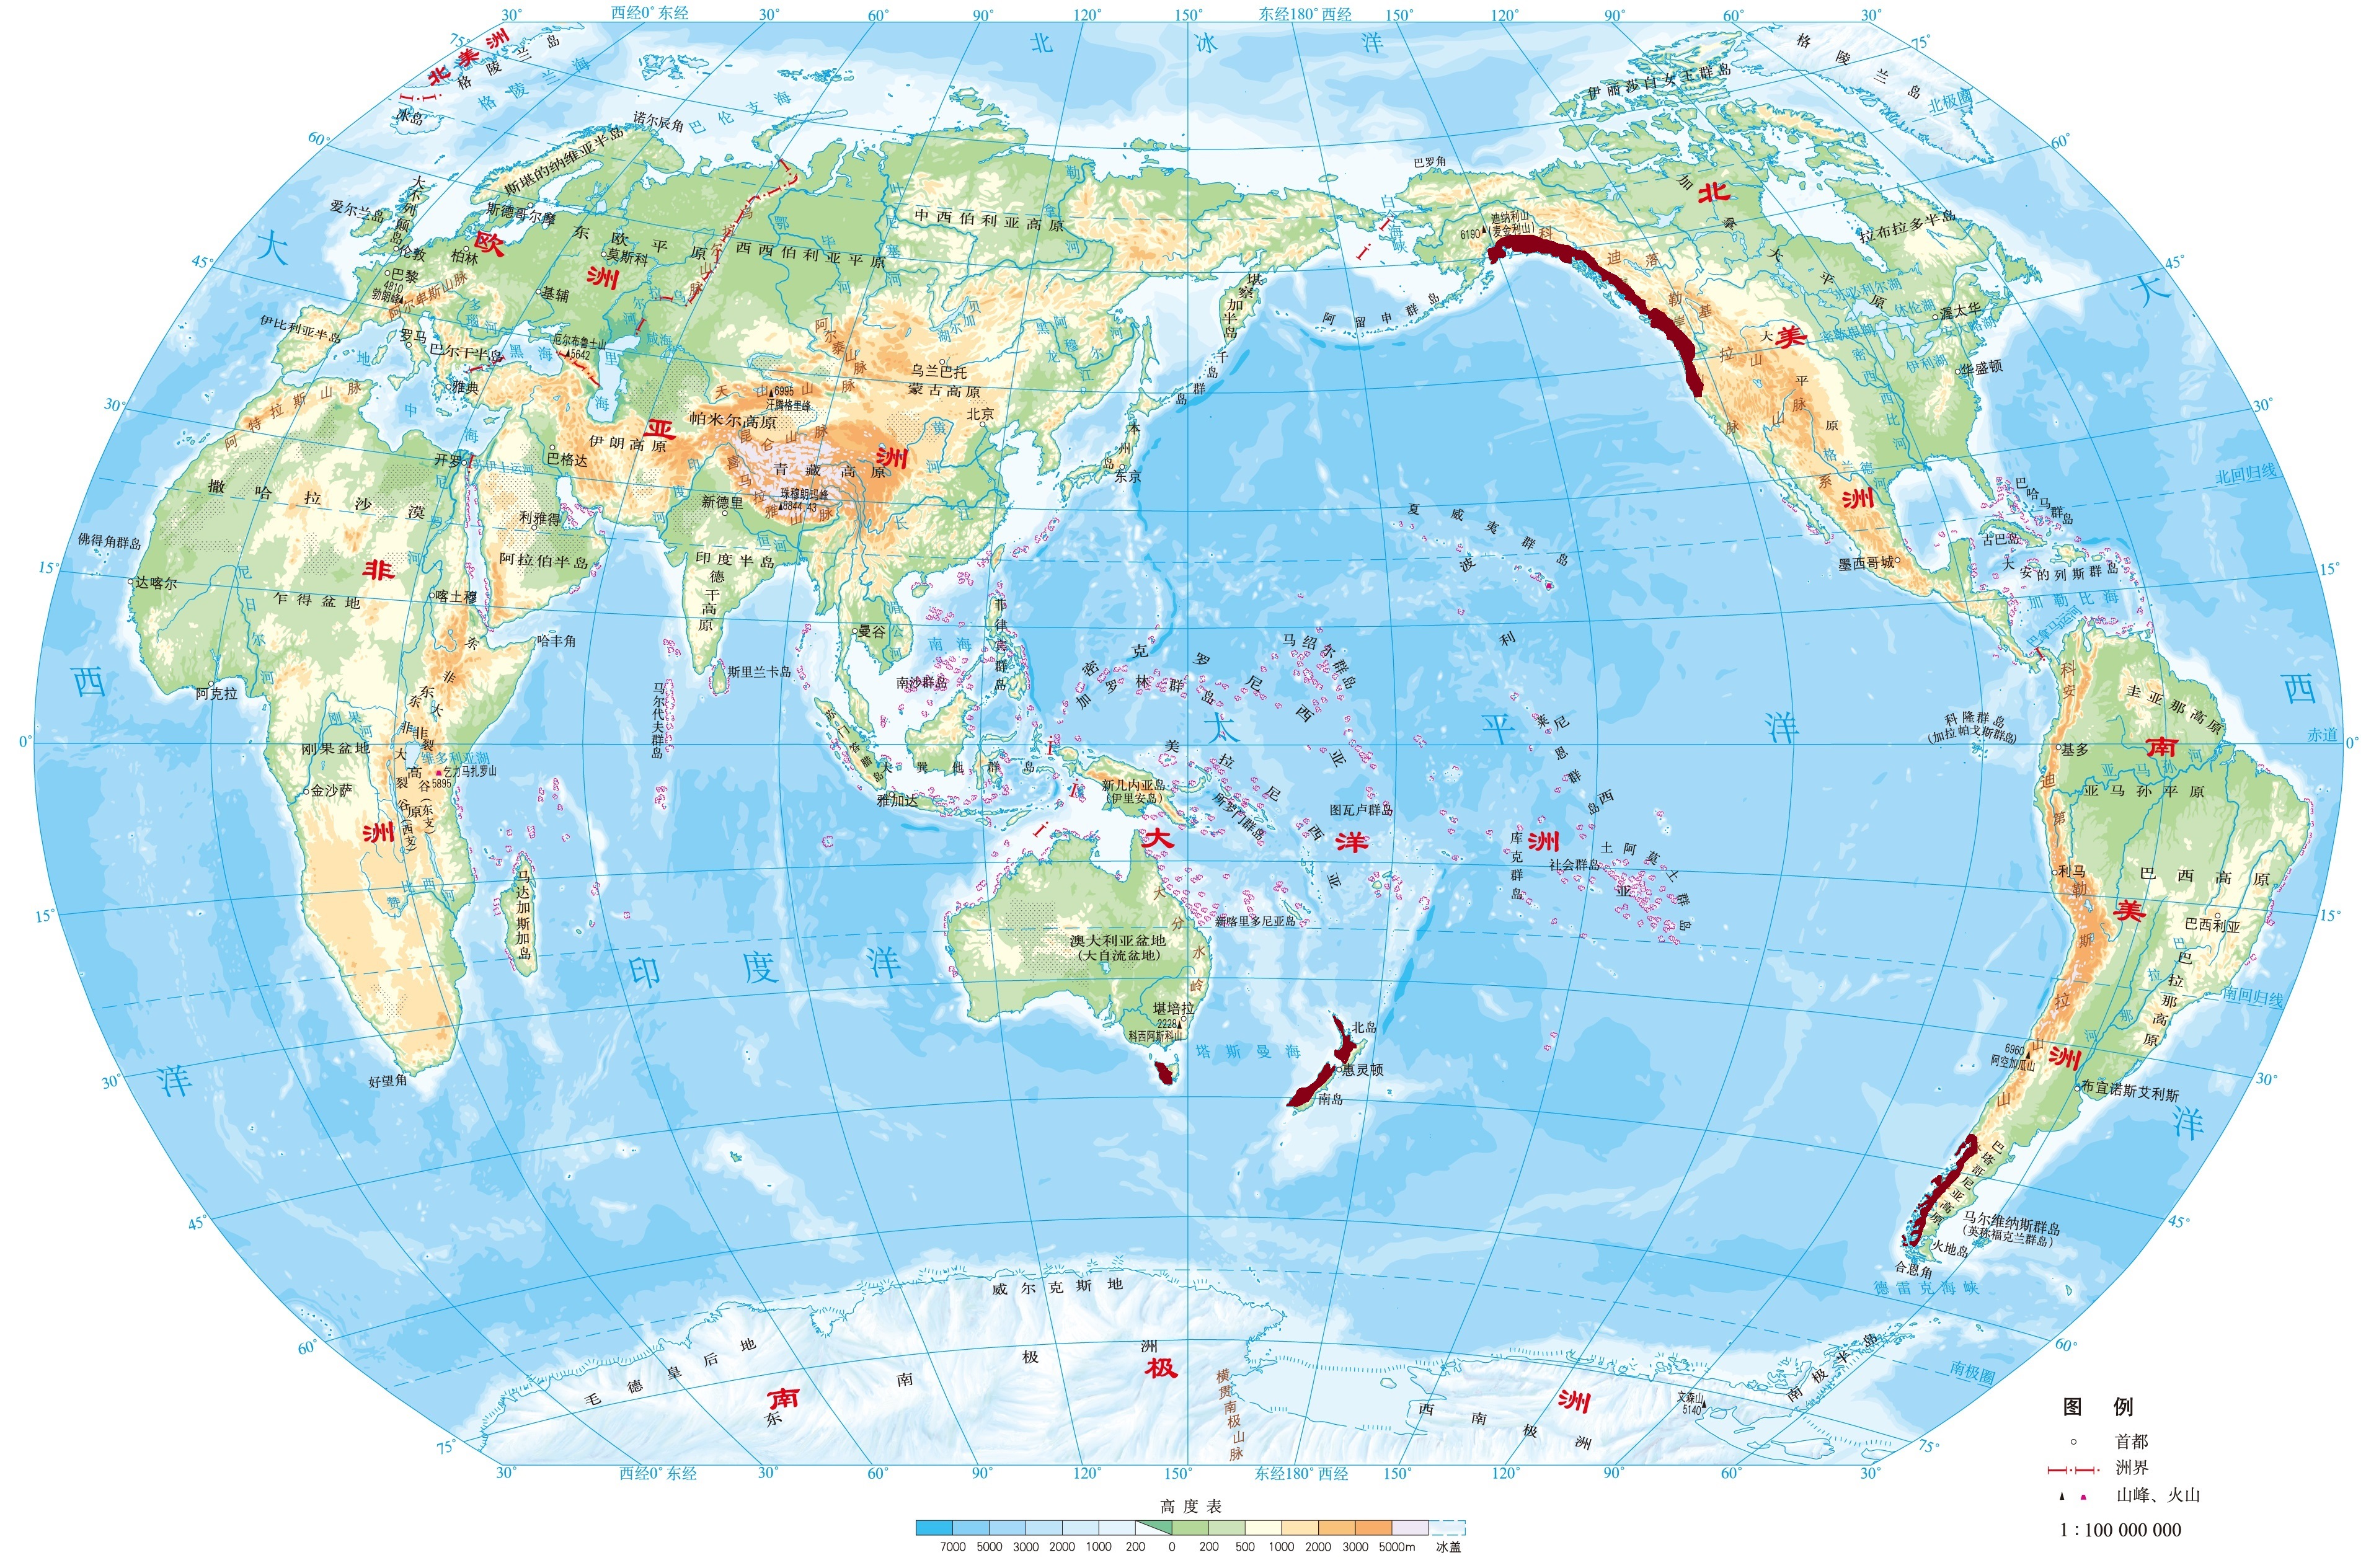 塔斯马尼亚岛地理位置及气候类型(塔斯马尼亚岛旅游攻略)